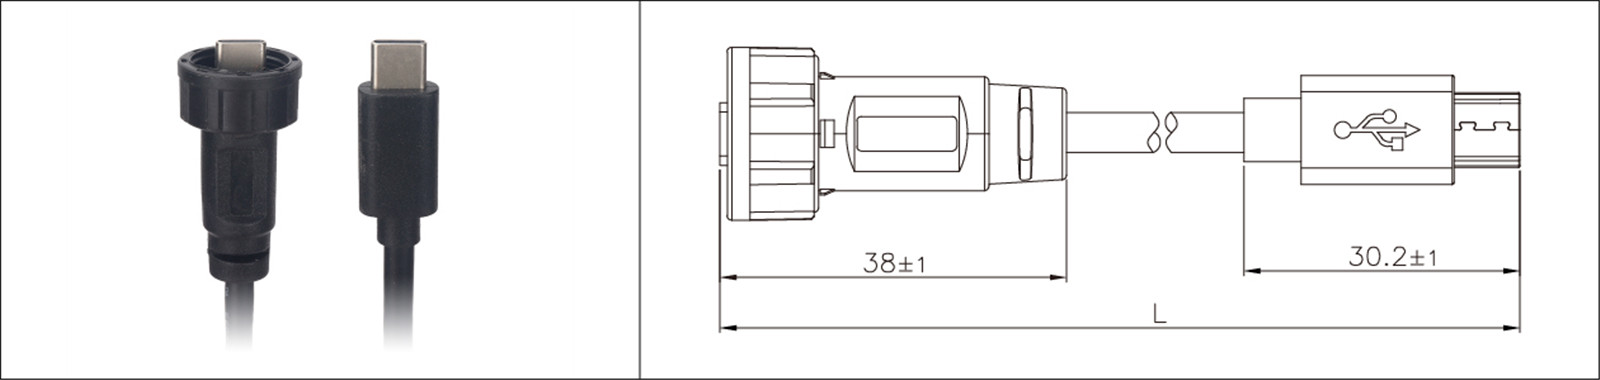 Mikro USB-panela muntaĵo tipo 2.0 3.0 ina kaj maskla akvorezista IP67 supermolda etendokablo industria konekto-02 (7)